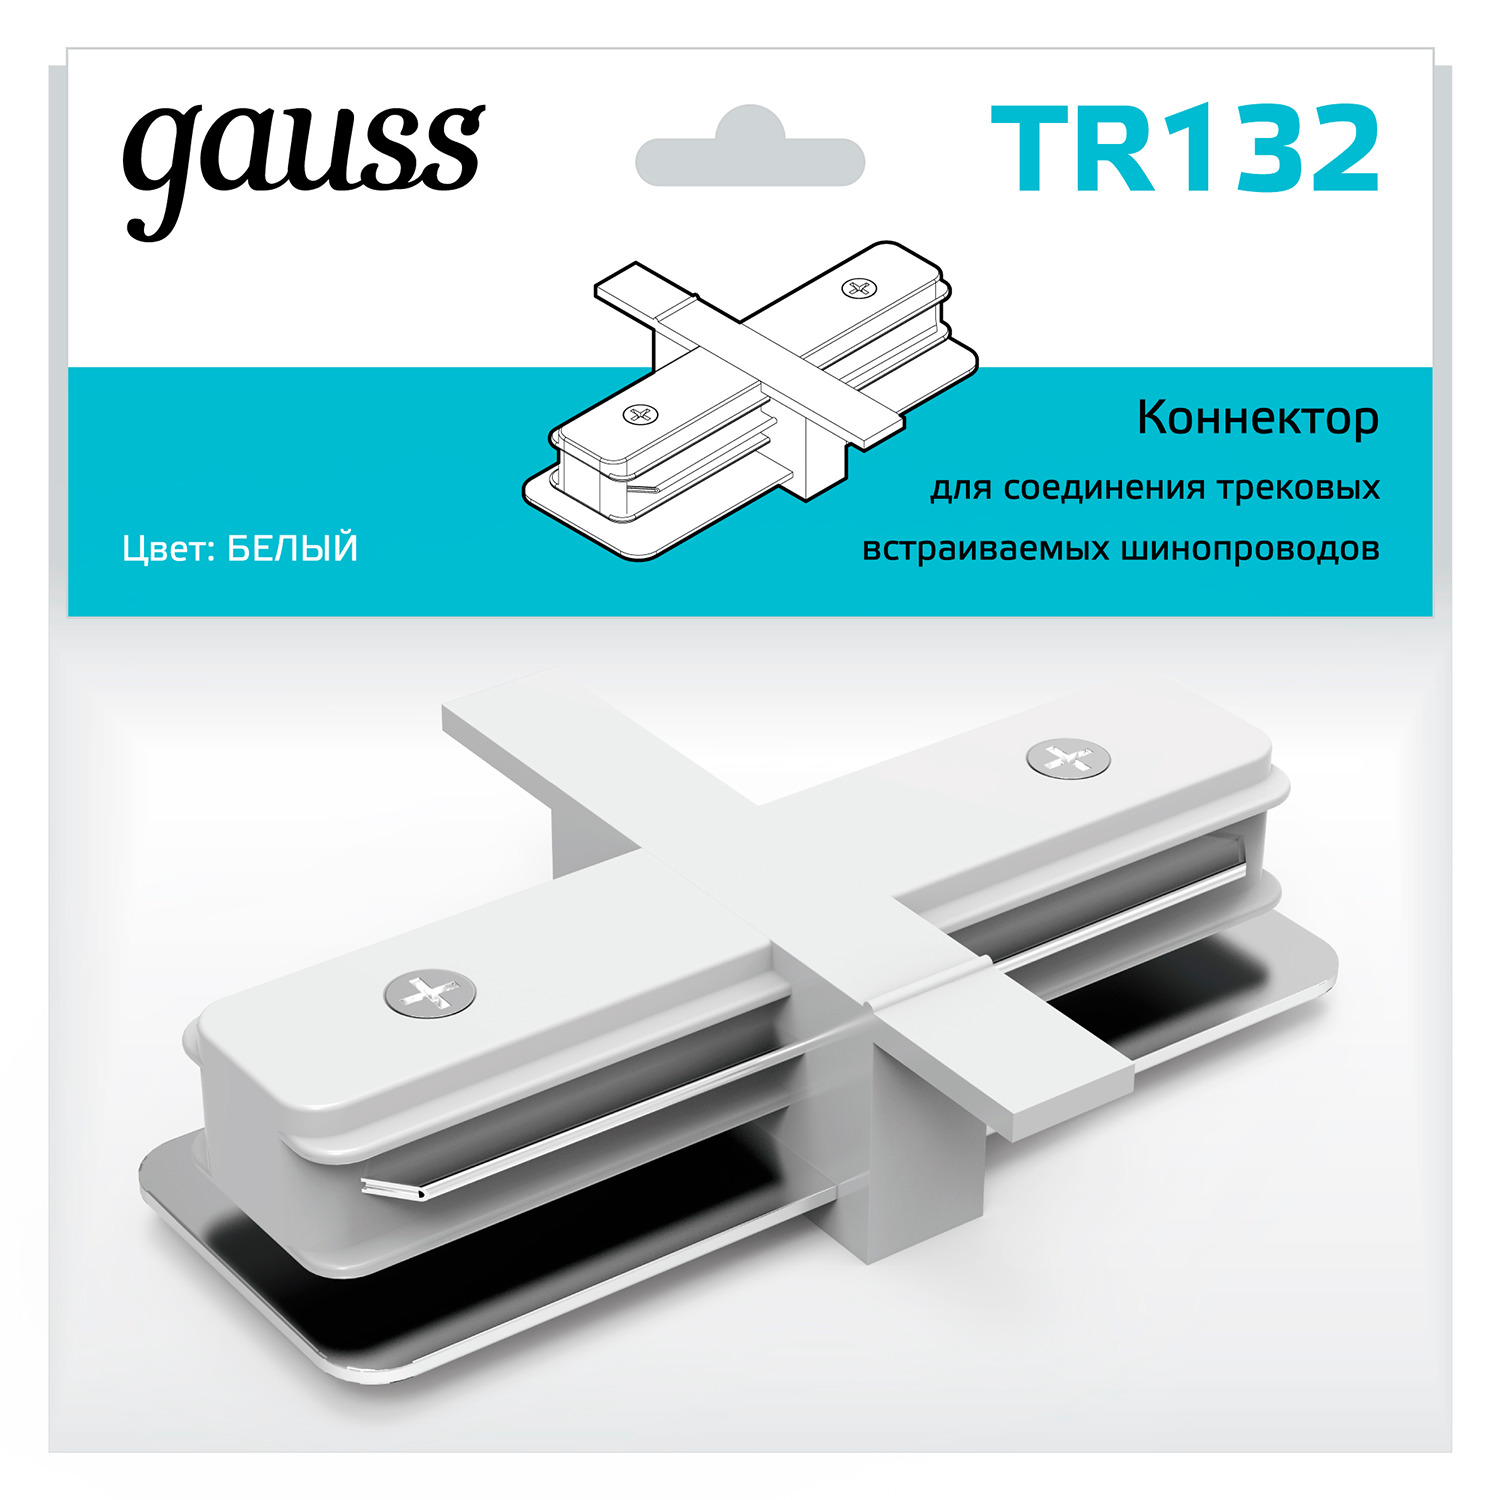 Коннектор Gauss для встраиваемых трековых шинопроводов прямой (I) белый коннектор gauss для встраиваемых трековых шинопроводов прямой i белый